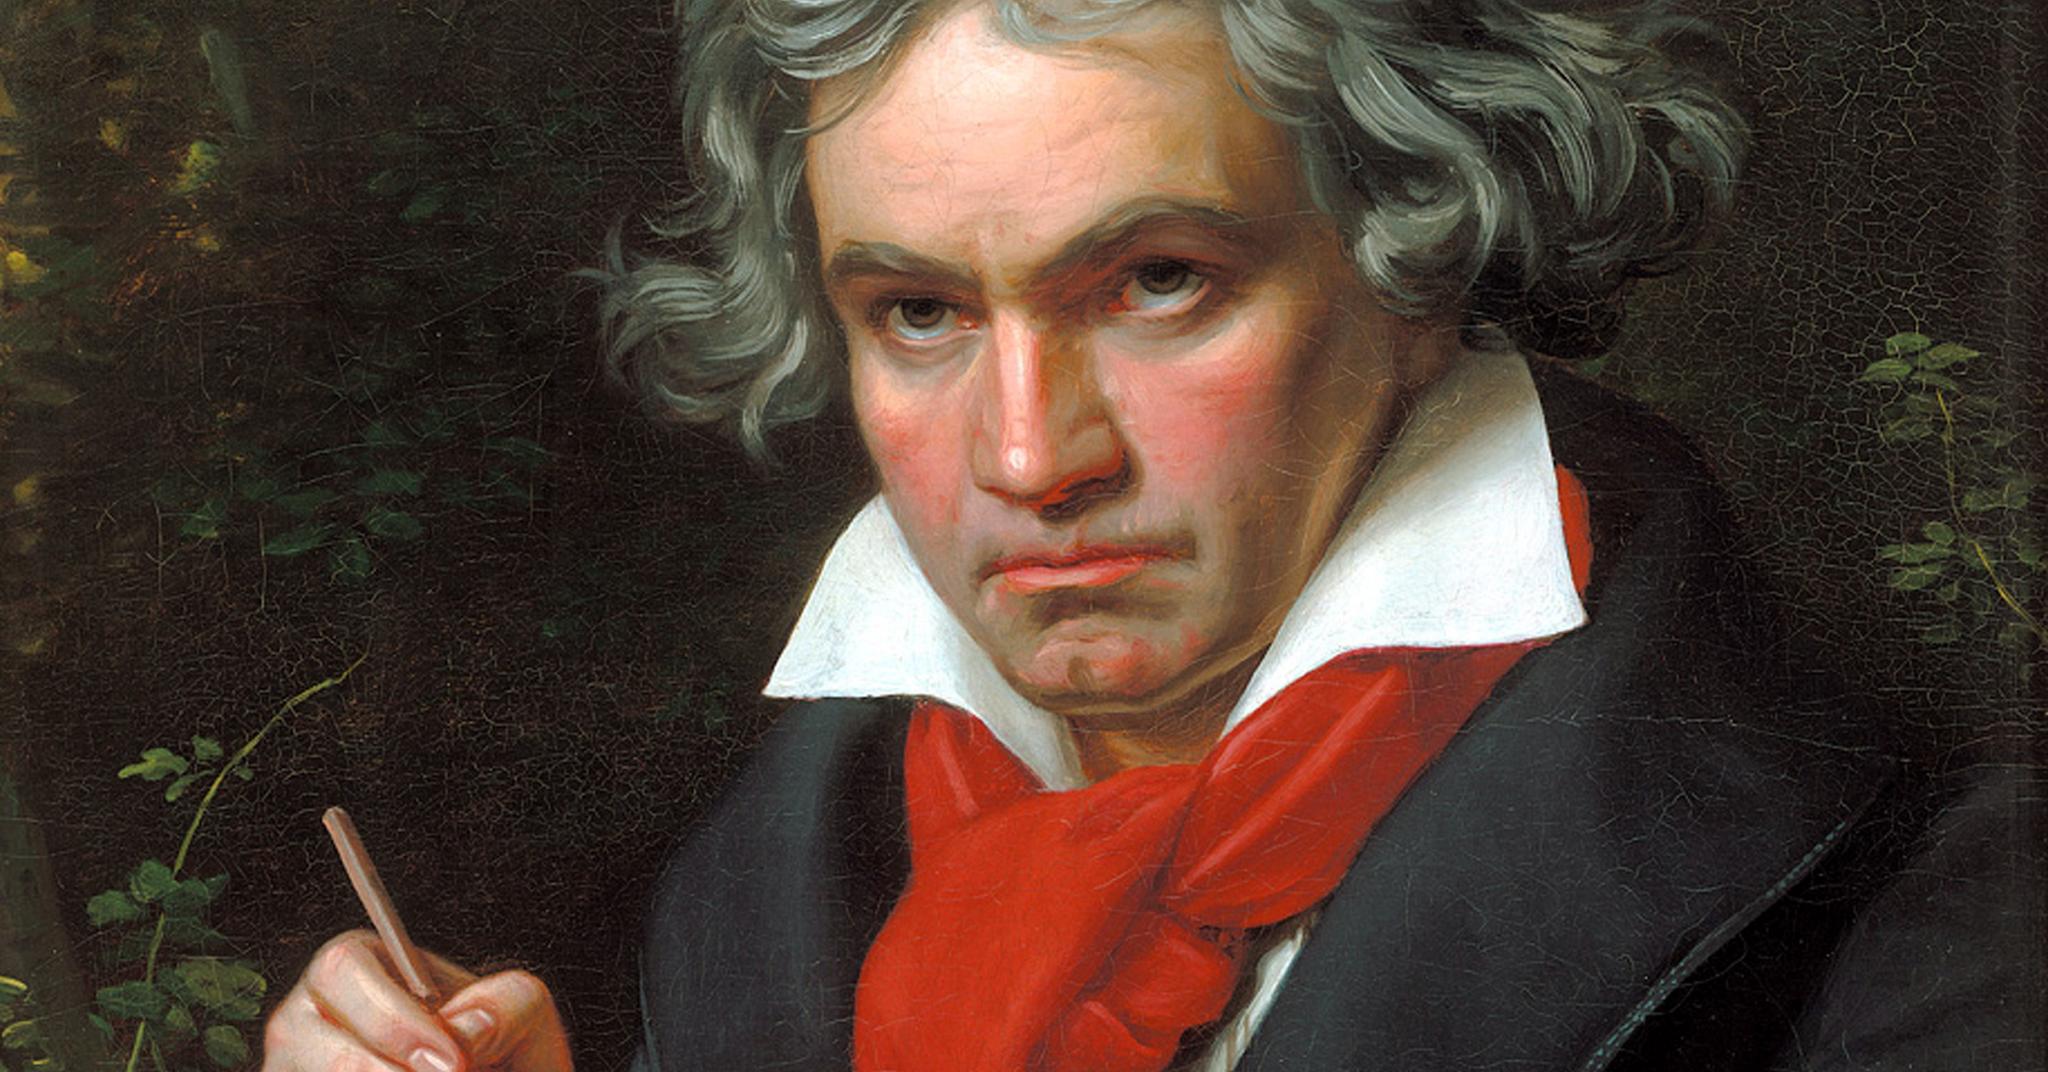 Portrettet av Ludwig van Beethoven malt av Joseph Karl Stieler i 1820 er blant de mest kjente fremstillingene vi har av komponisten. Bredskuldret, med bustete hår, stikkende øyne og pennen i hånd er han et symbol på den romantiske kunstnermyten.